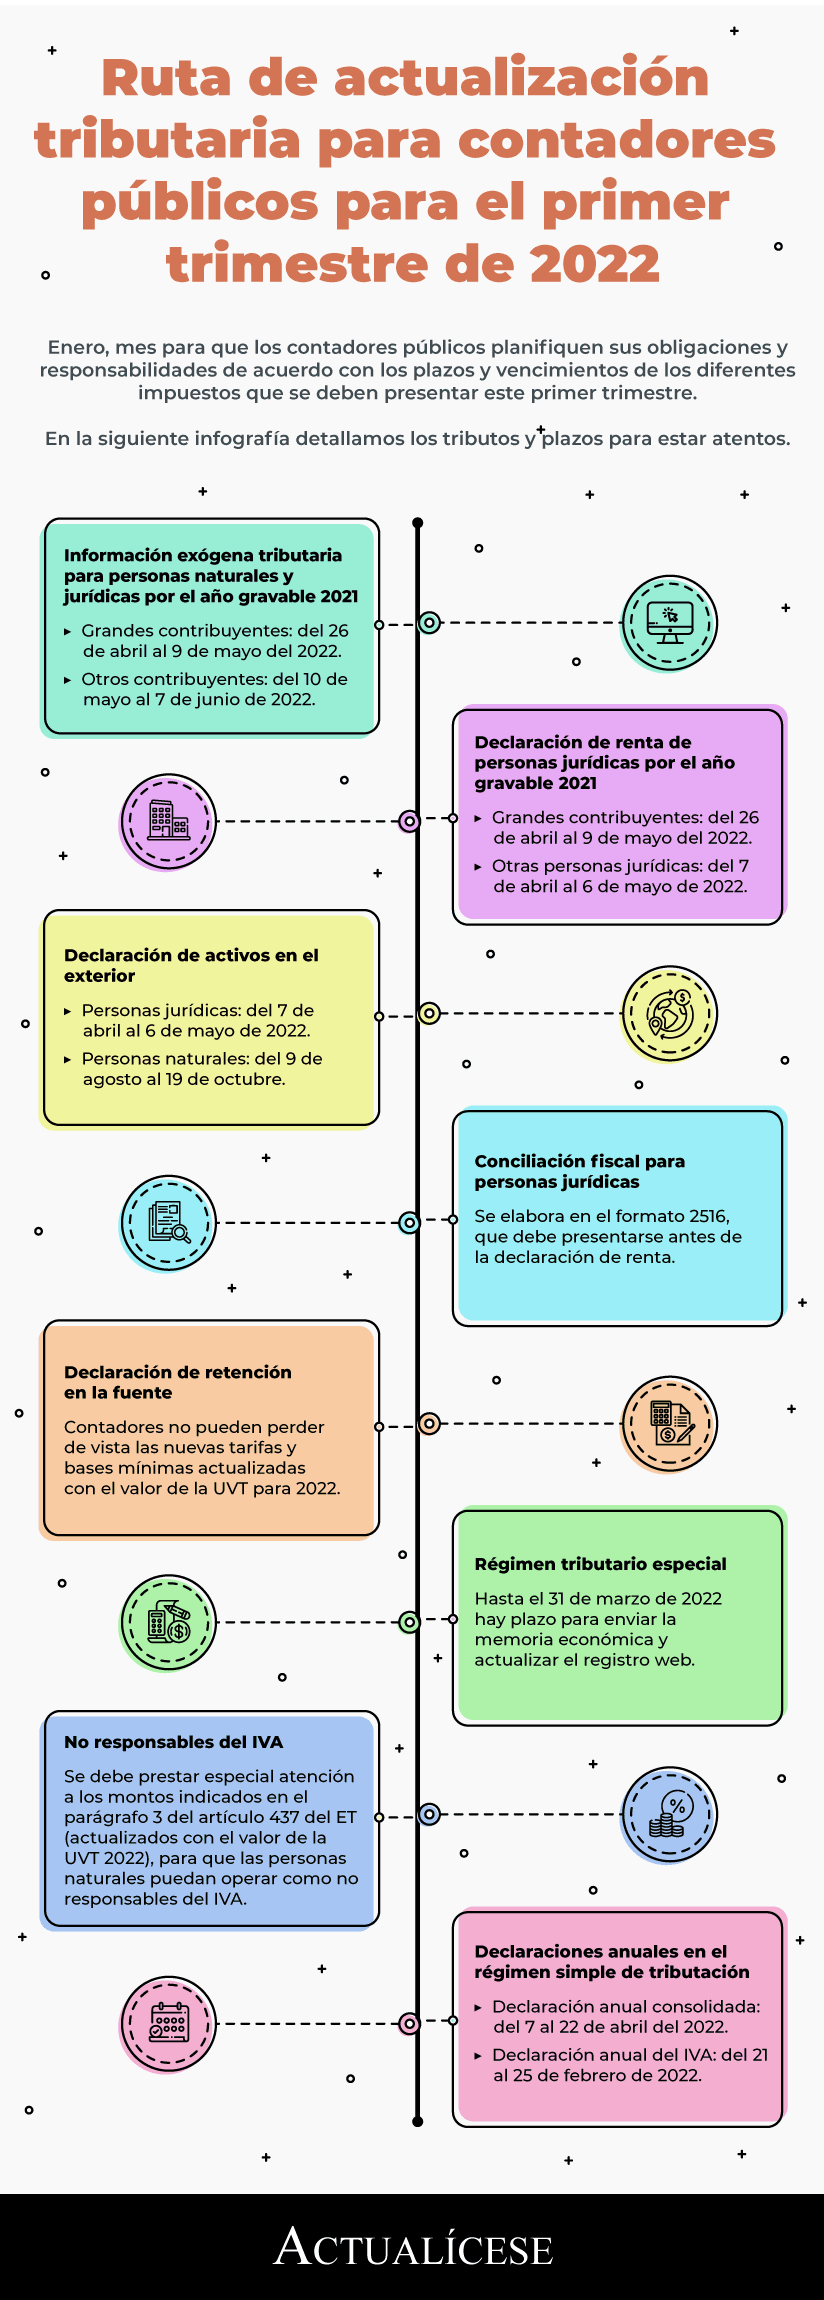 [Infografía] Ruta de actualización tributaria para contadores públicos para el primer trimestre de 2022